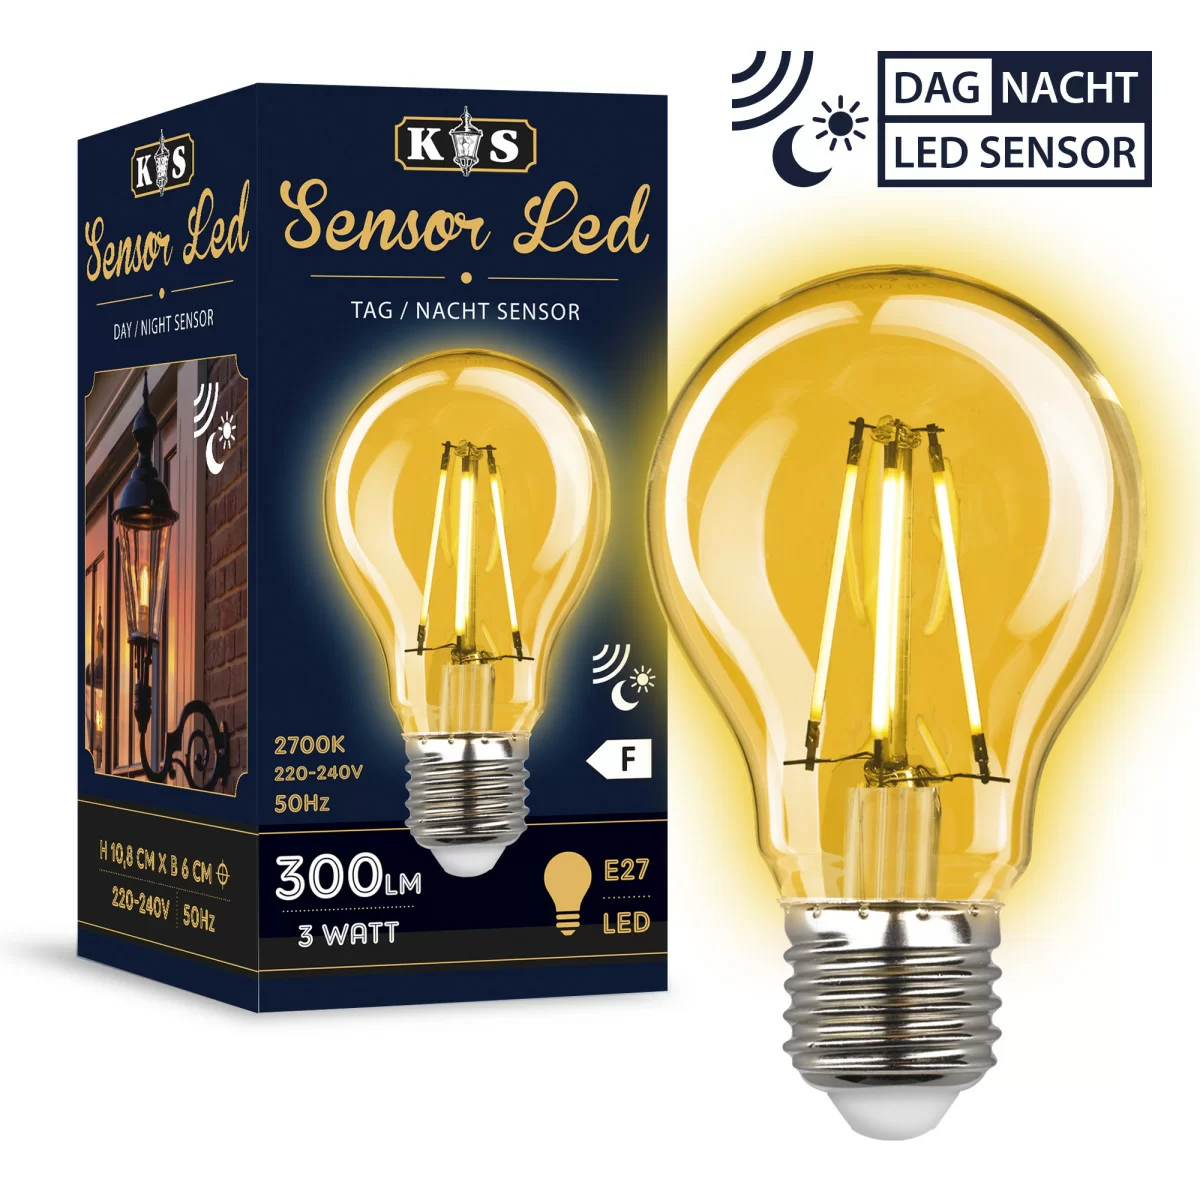 bouwen Schijnen constant Sensor LED light source | Official site KS outdoor lighting company